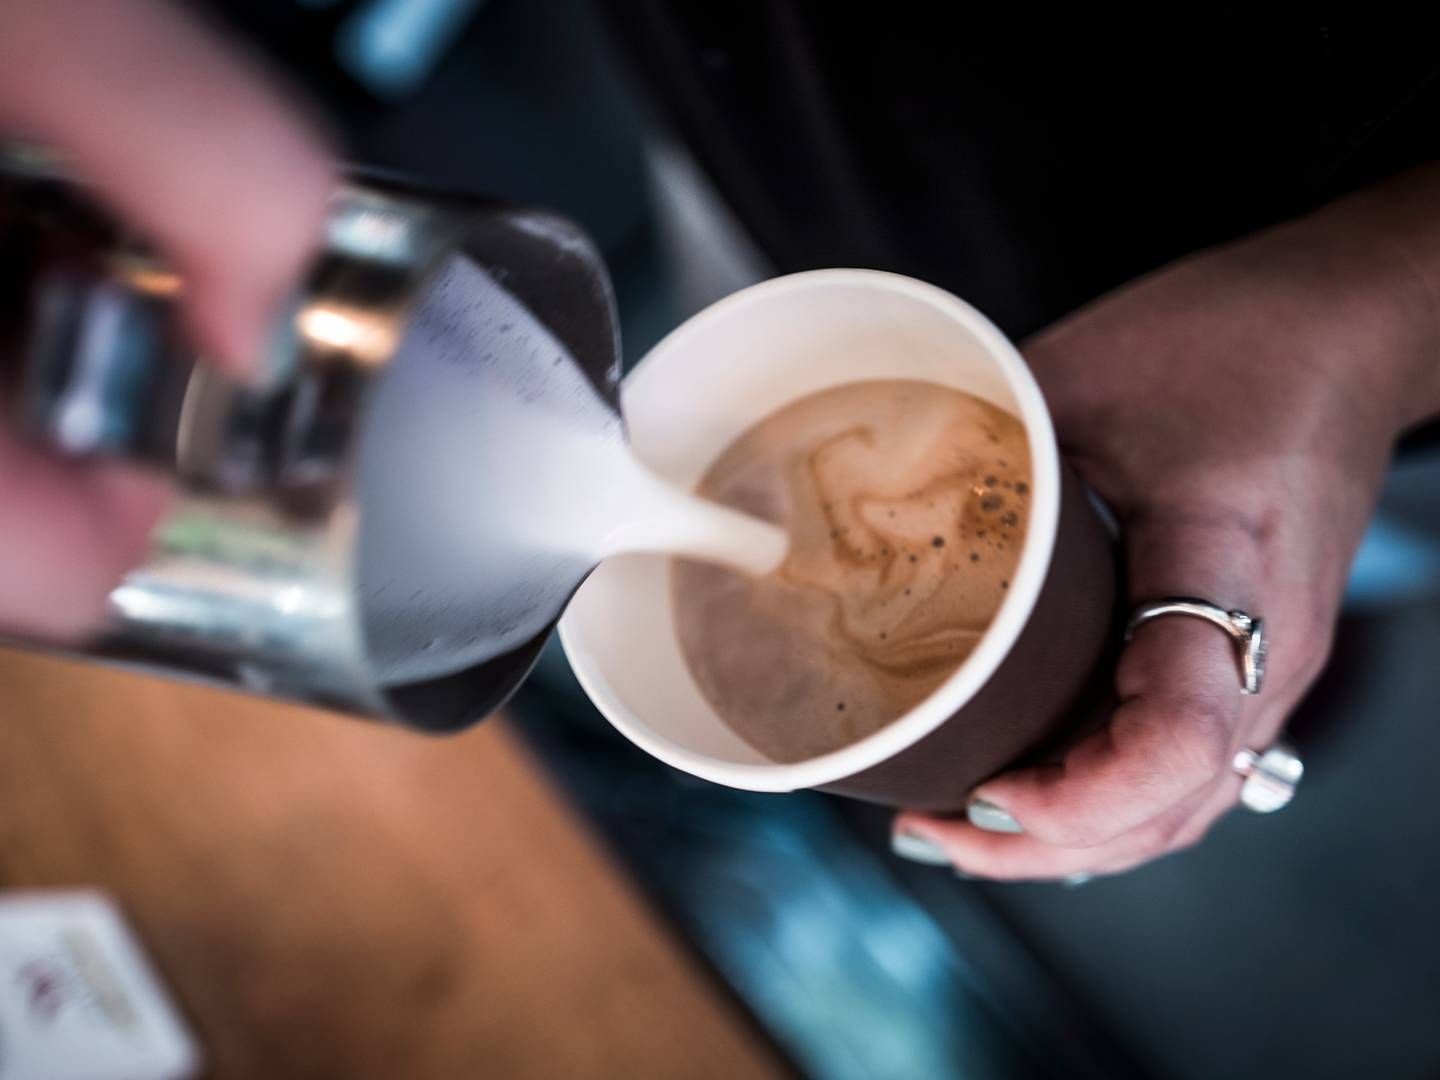 I alt er der produceret 40.000 to go-kaffekopper til forsøget. | Foto: Jonas Olufson